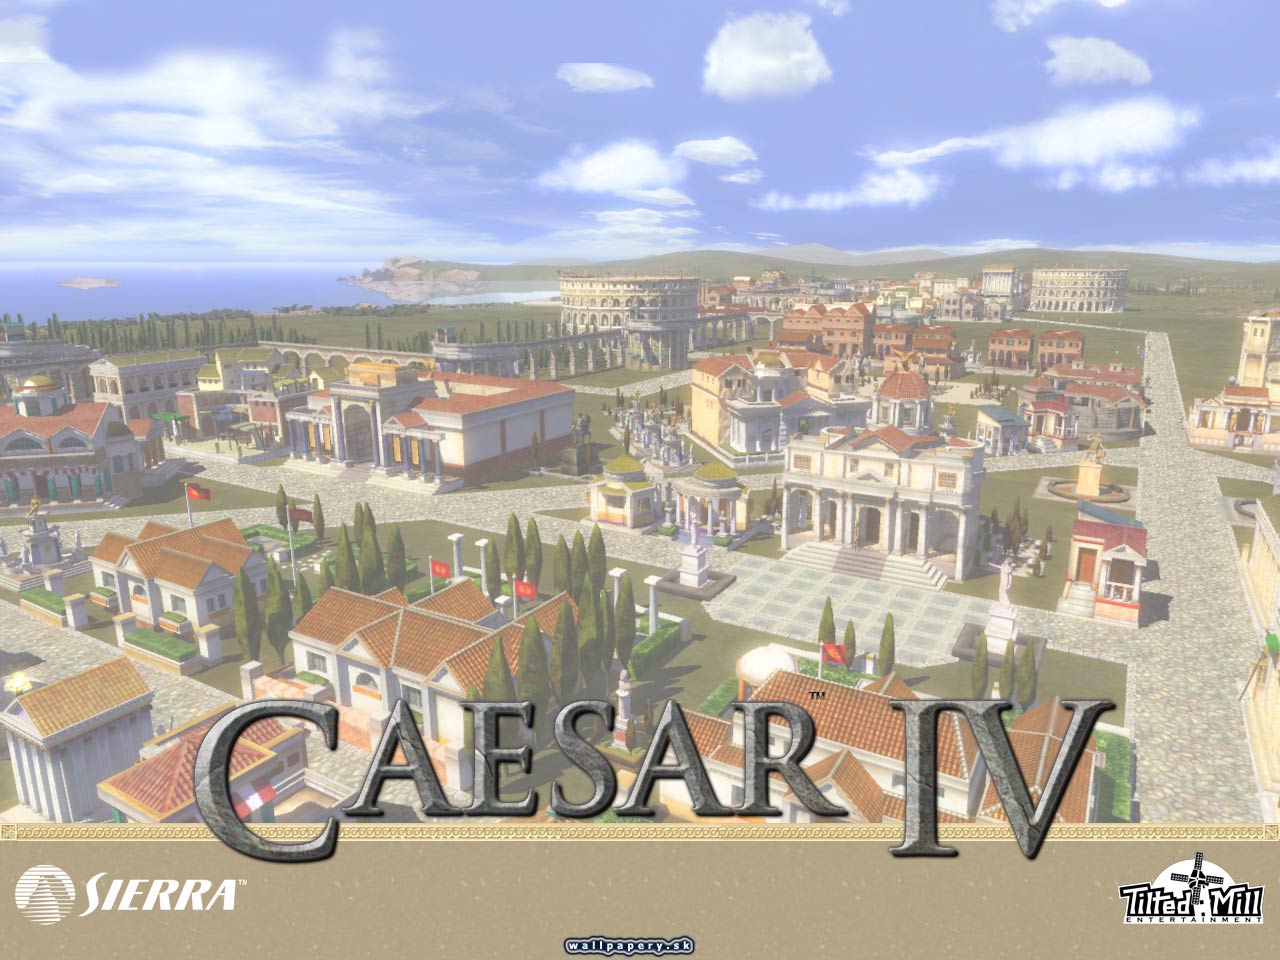 Caesar 4 - wallpaper 8